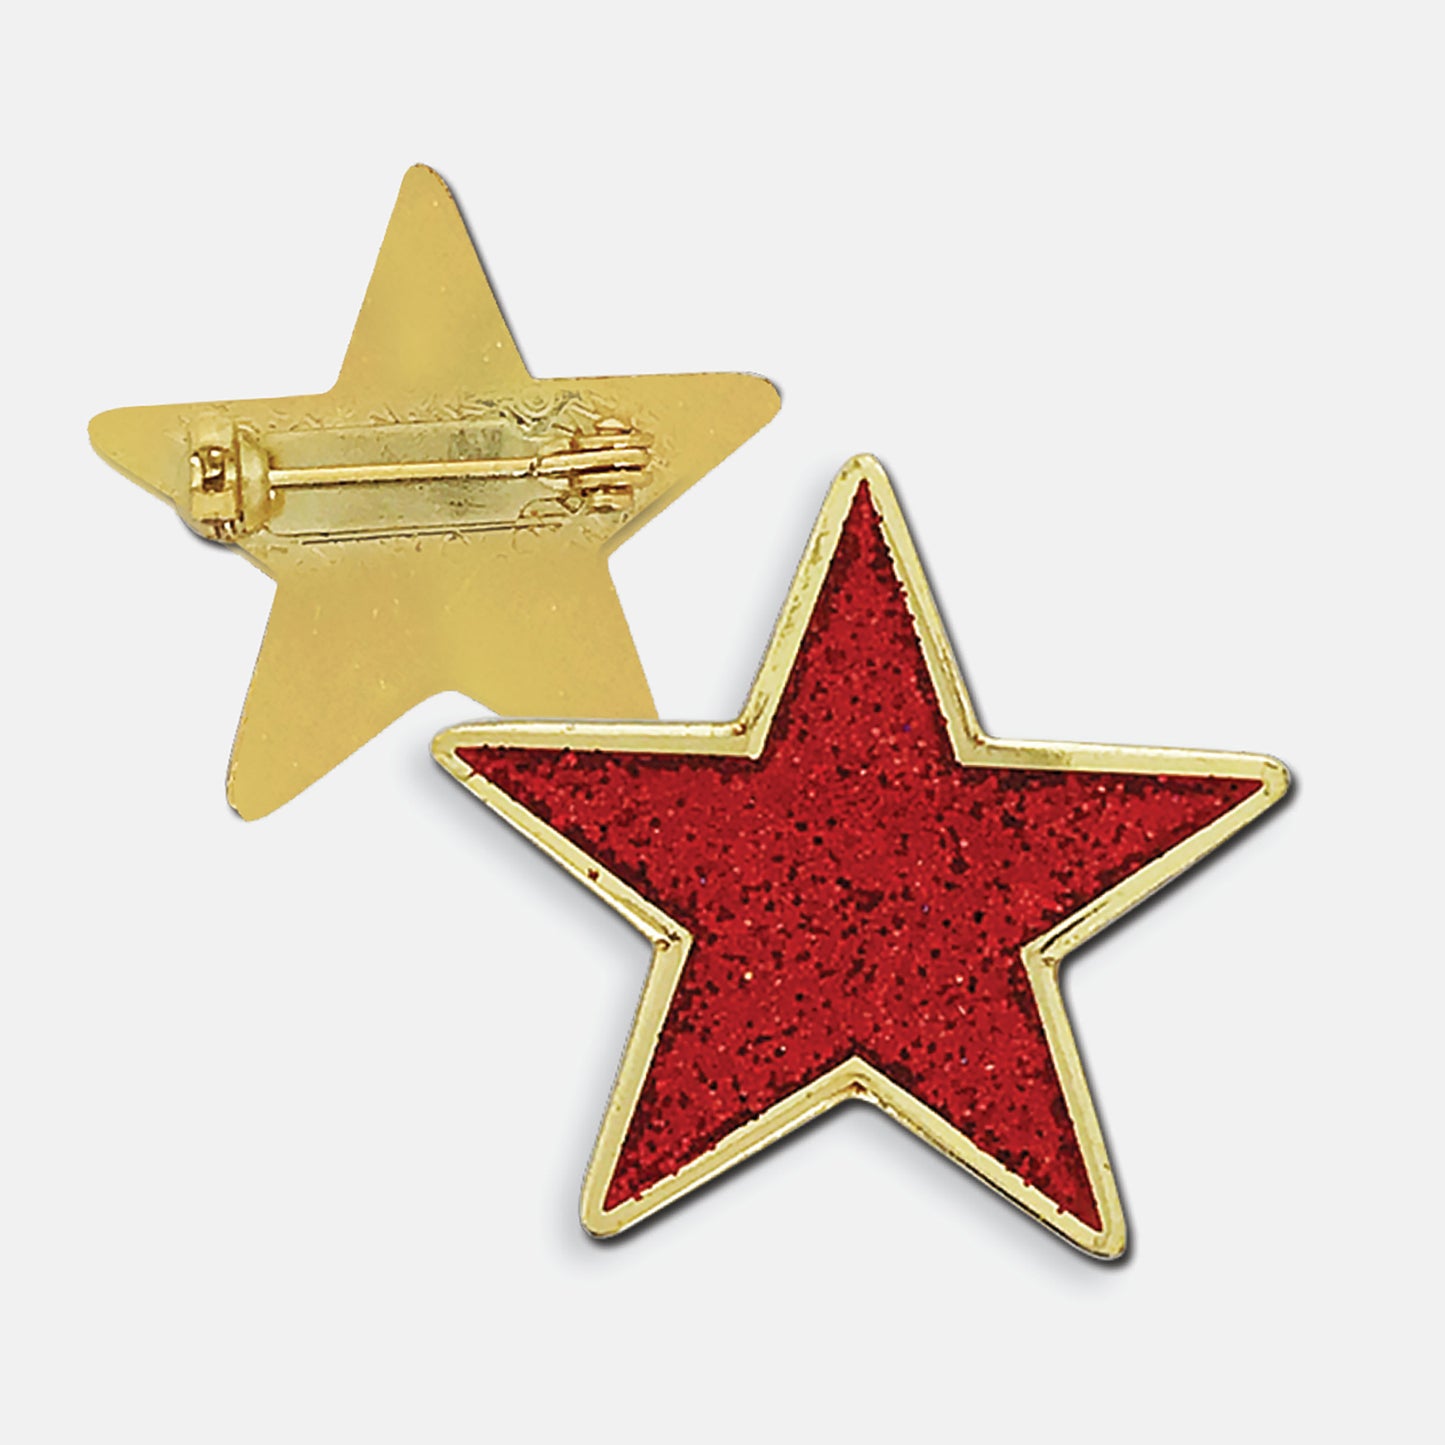 Enamel Glitter Star Badge - 25mm